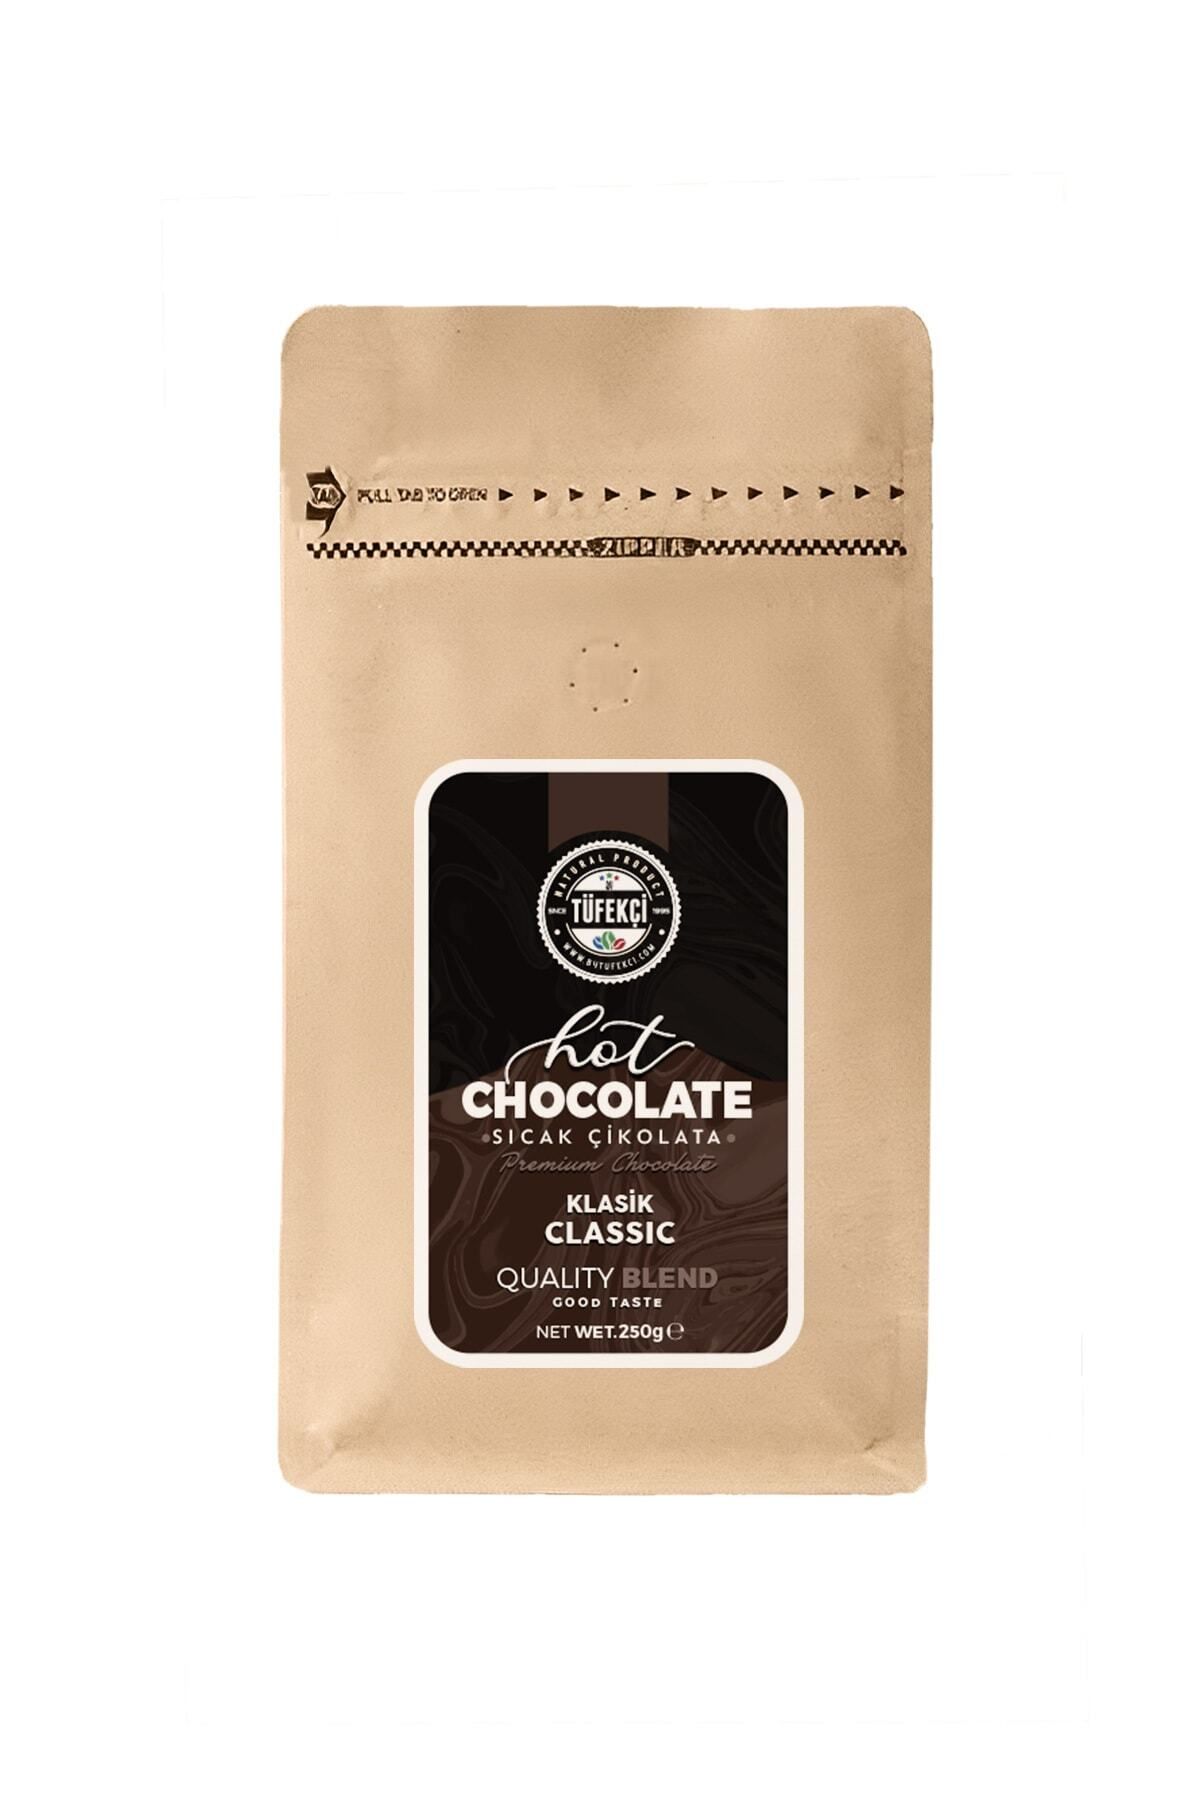 By Tüfekçi Klasik Sıcak Çikolata Gerçek Şeker Yüksek Kakao 10 Bardak 250 gr